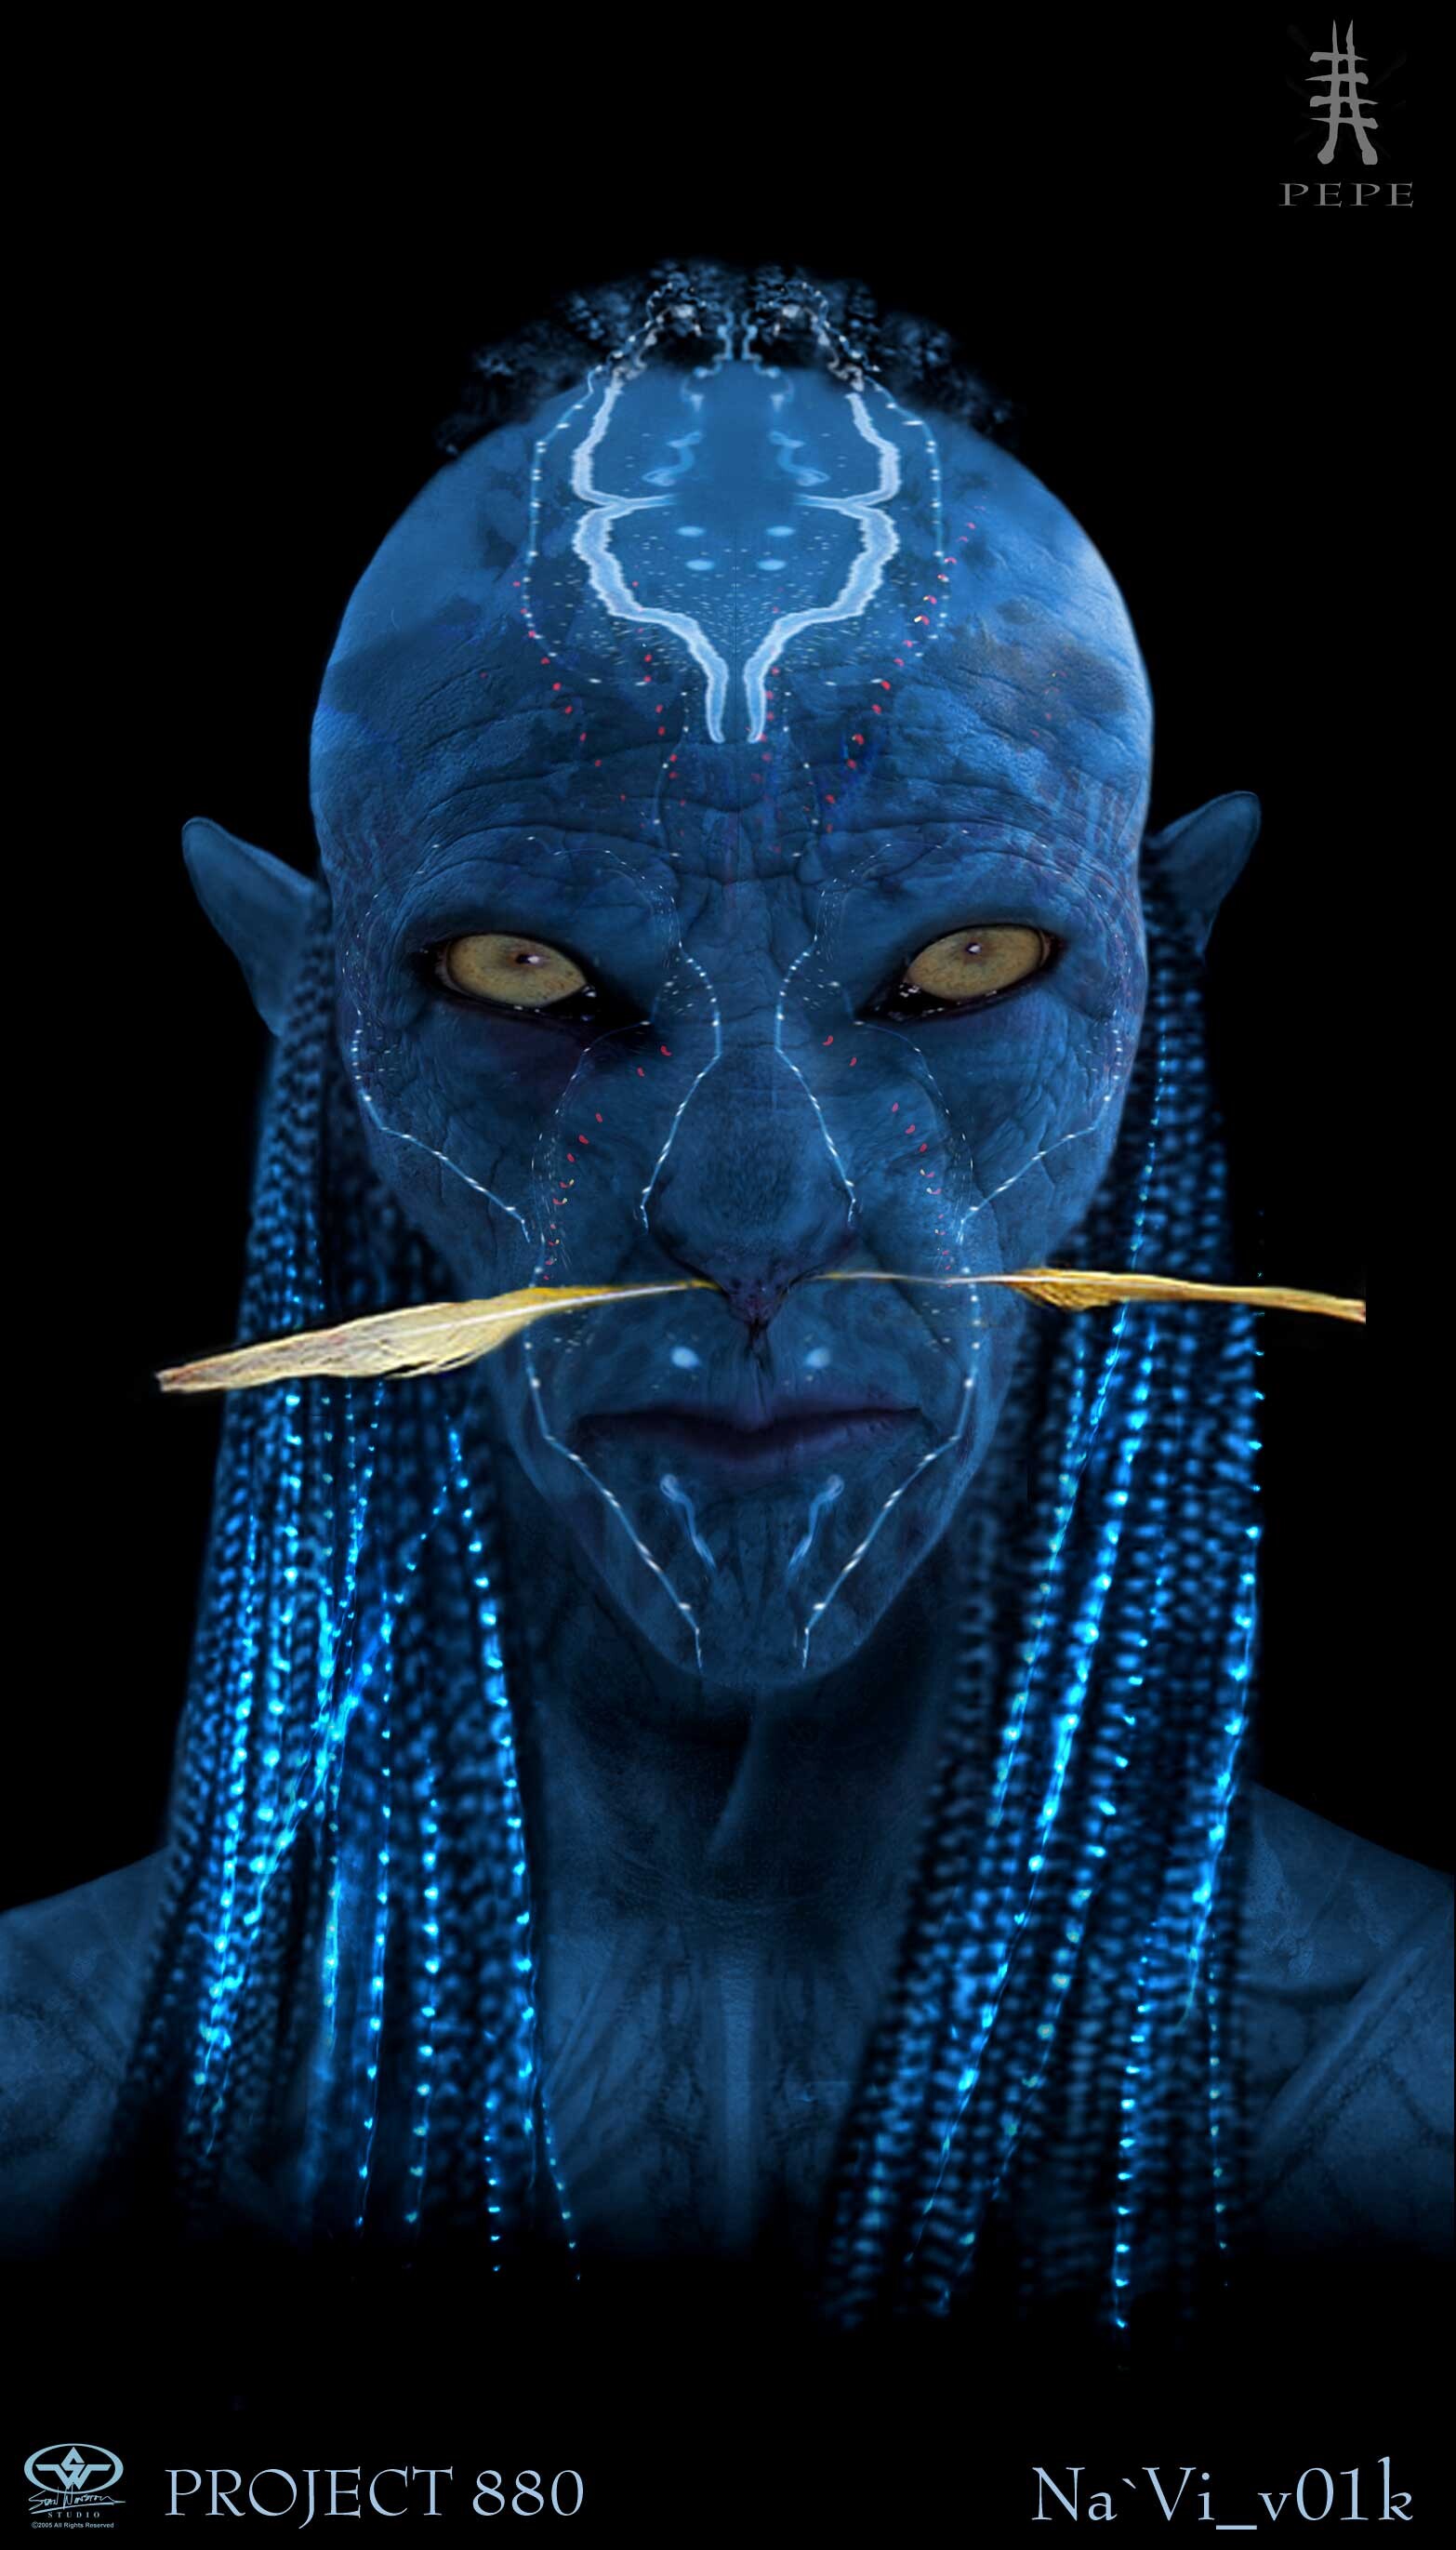 Tổng hợp Avatar (2009) – nếu bạn là một fan của bộ phim siêu phẩm kinh điển Avatar, hãy truy cập headenglish.edu.vn để tìm hiểu về các chi tiết và sự kiện quan trọng trong bộ phim. Cùng tìm hiểu những thông tin thú vị về văn hóa Na\'vi và thế giới đầy màu sắc và kì thú.